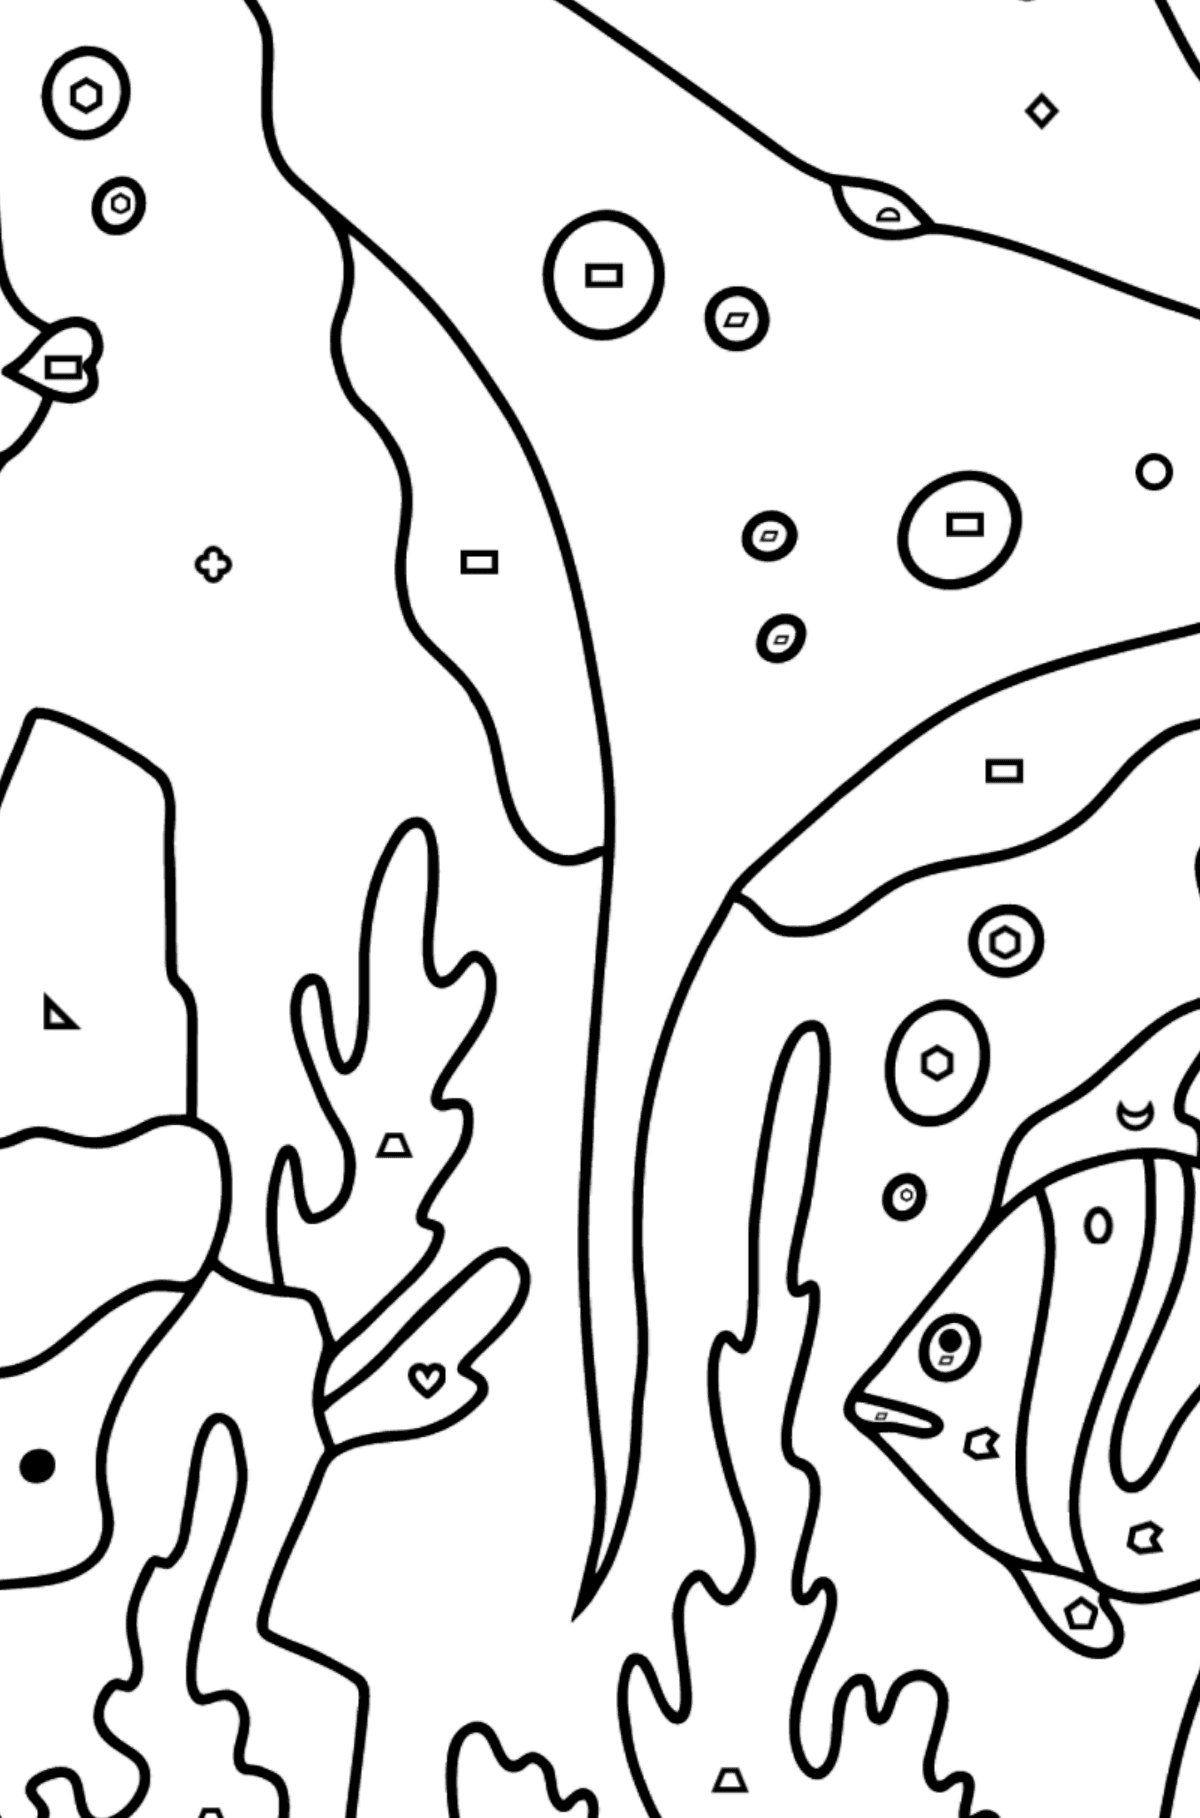 Målarbild fisk och en stingrocka (svår) - Färgläggning av geometriska former För barn